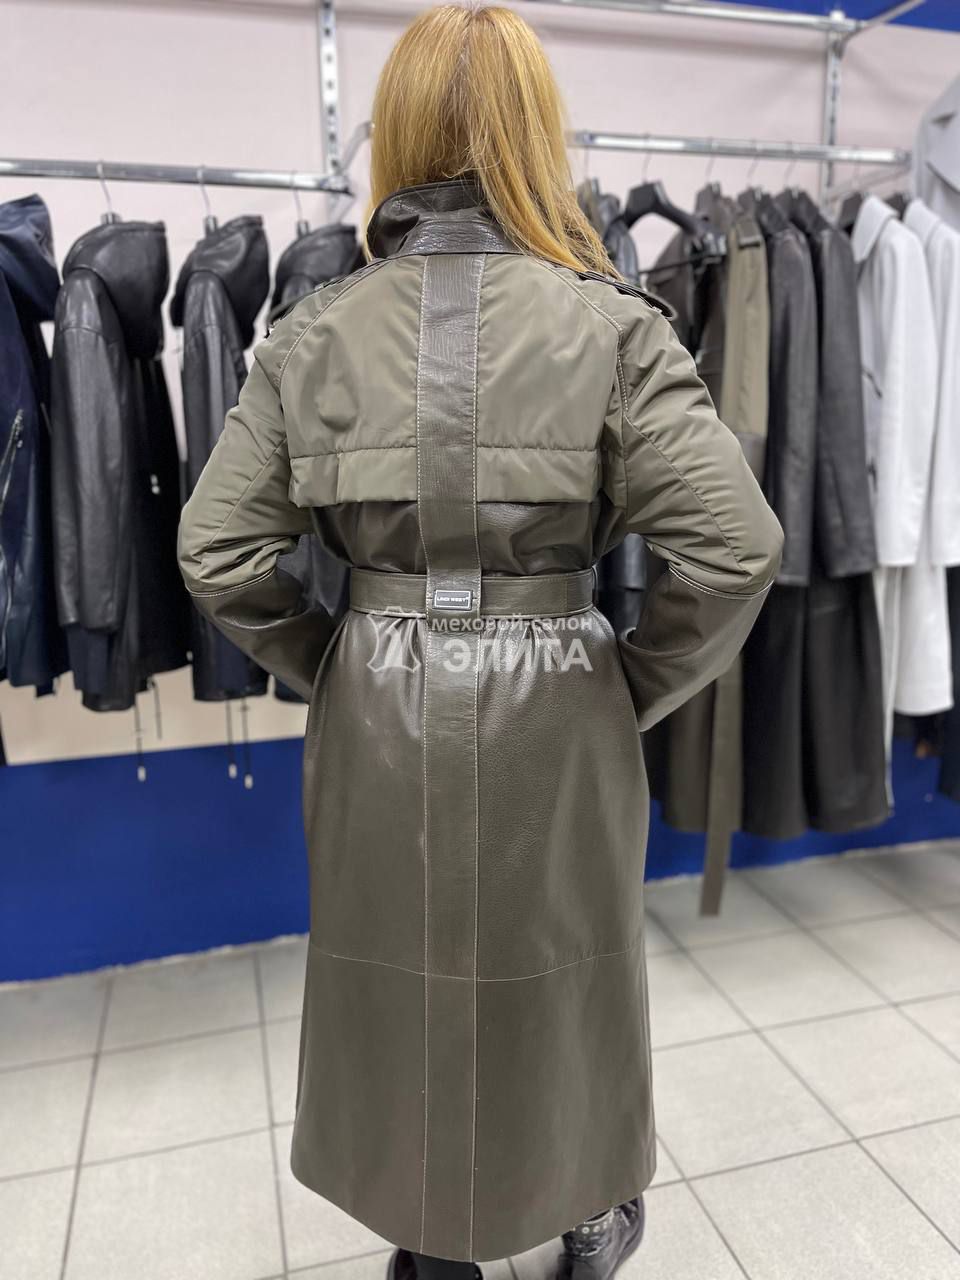 Кожаное пальто м-2804 р-р 44-52, цена 53500 рублей в интернет-магазине кожи и меха ЭЛИТА. Вид 2